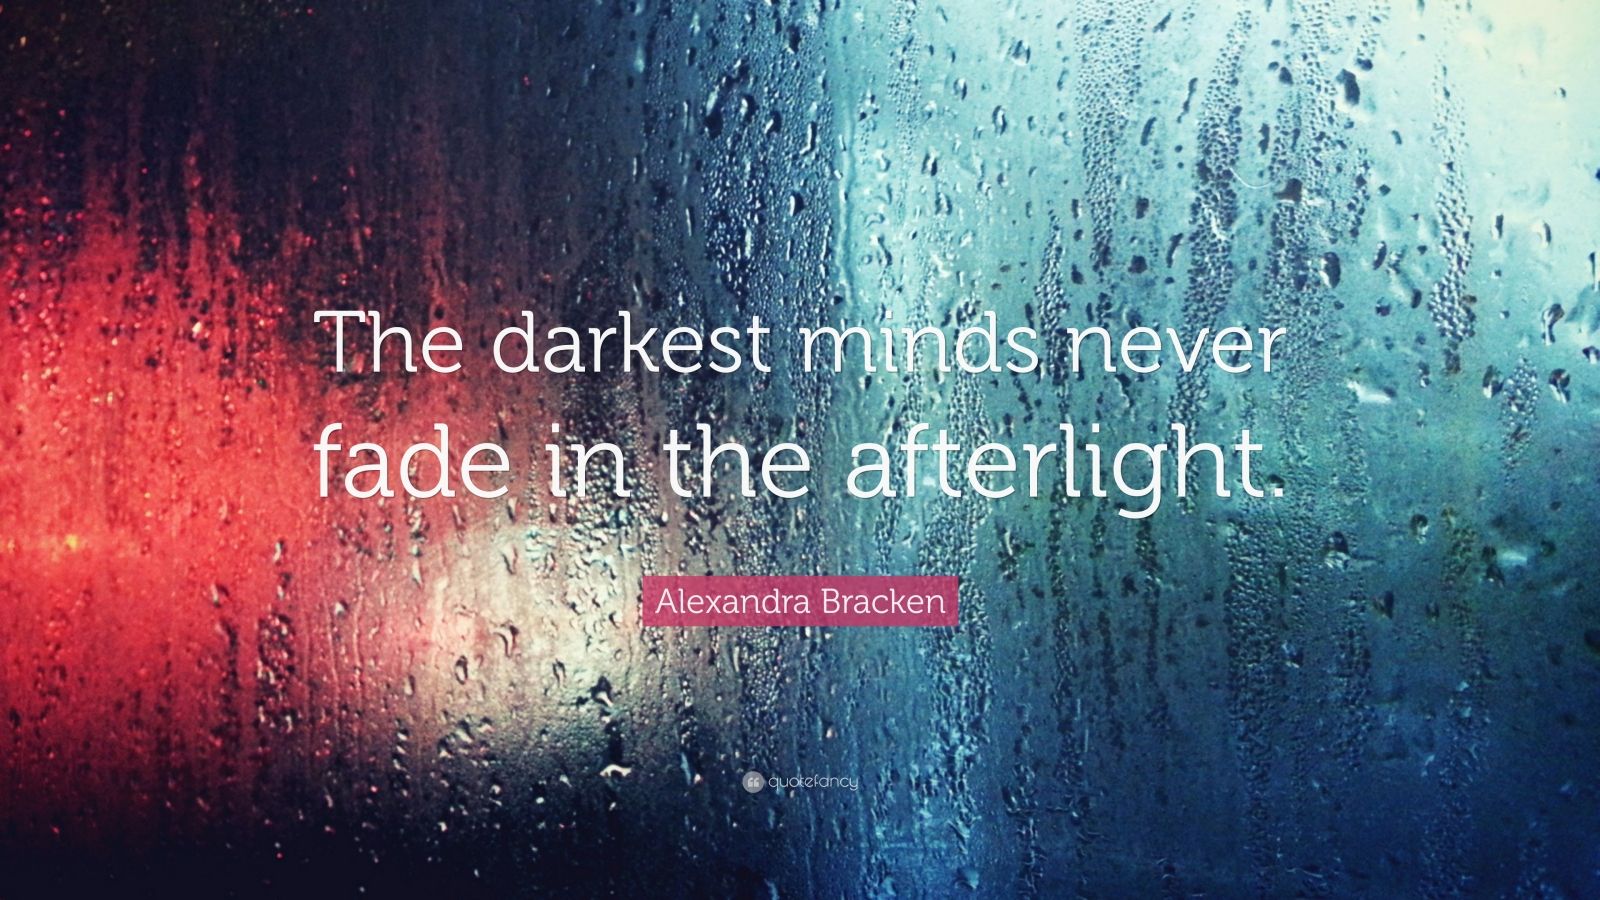 In the Afterlight by Alexandra Bracken